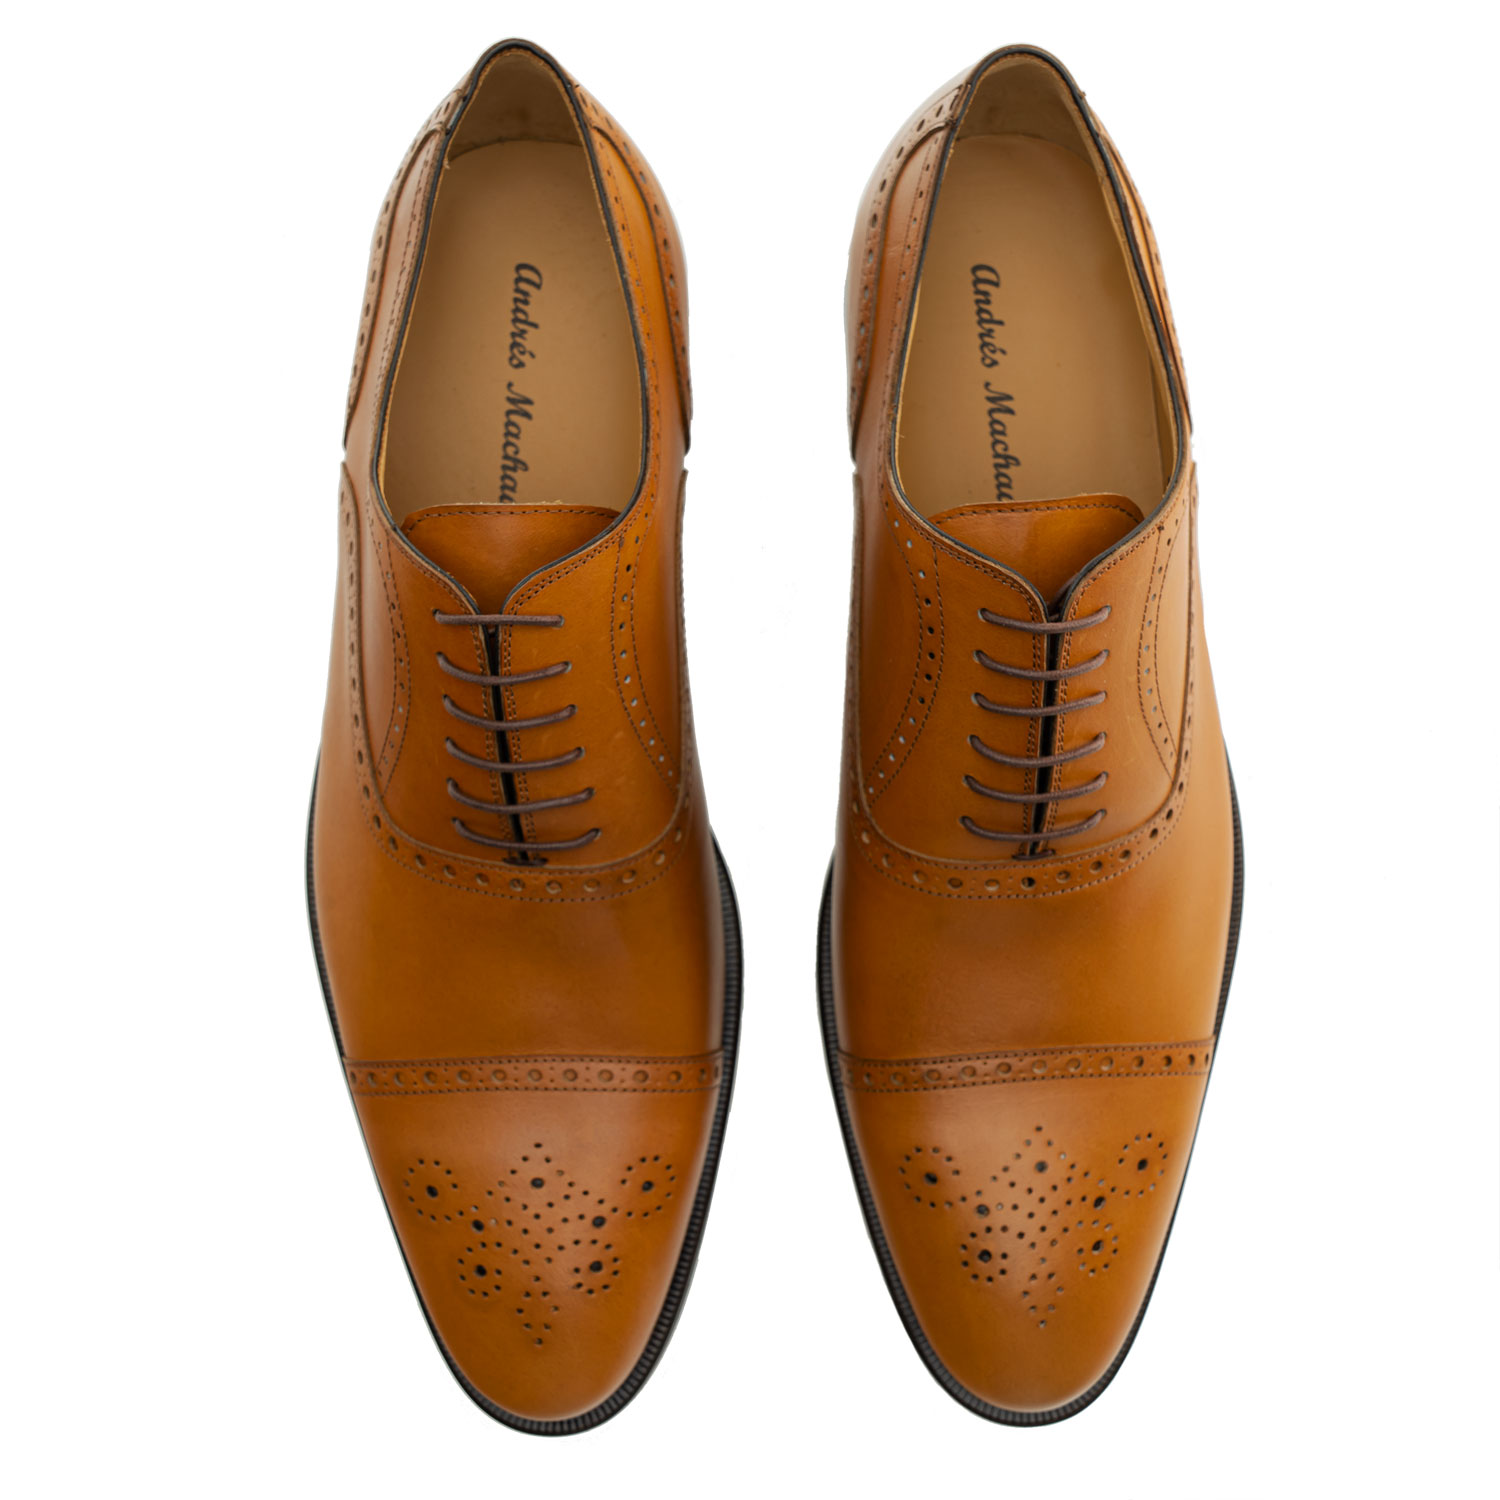 Zapatos estilo Oxford en Piel color Cuero 